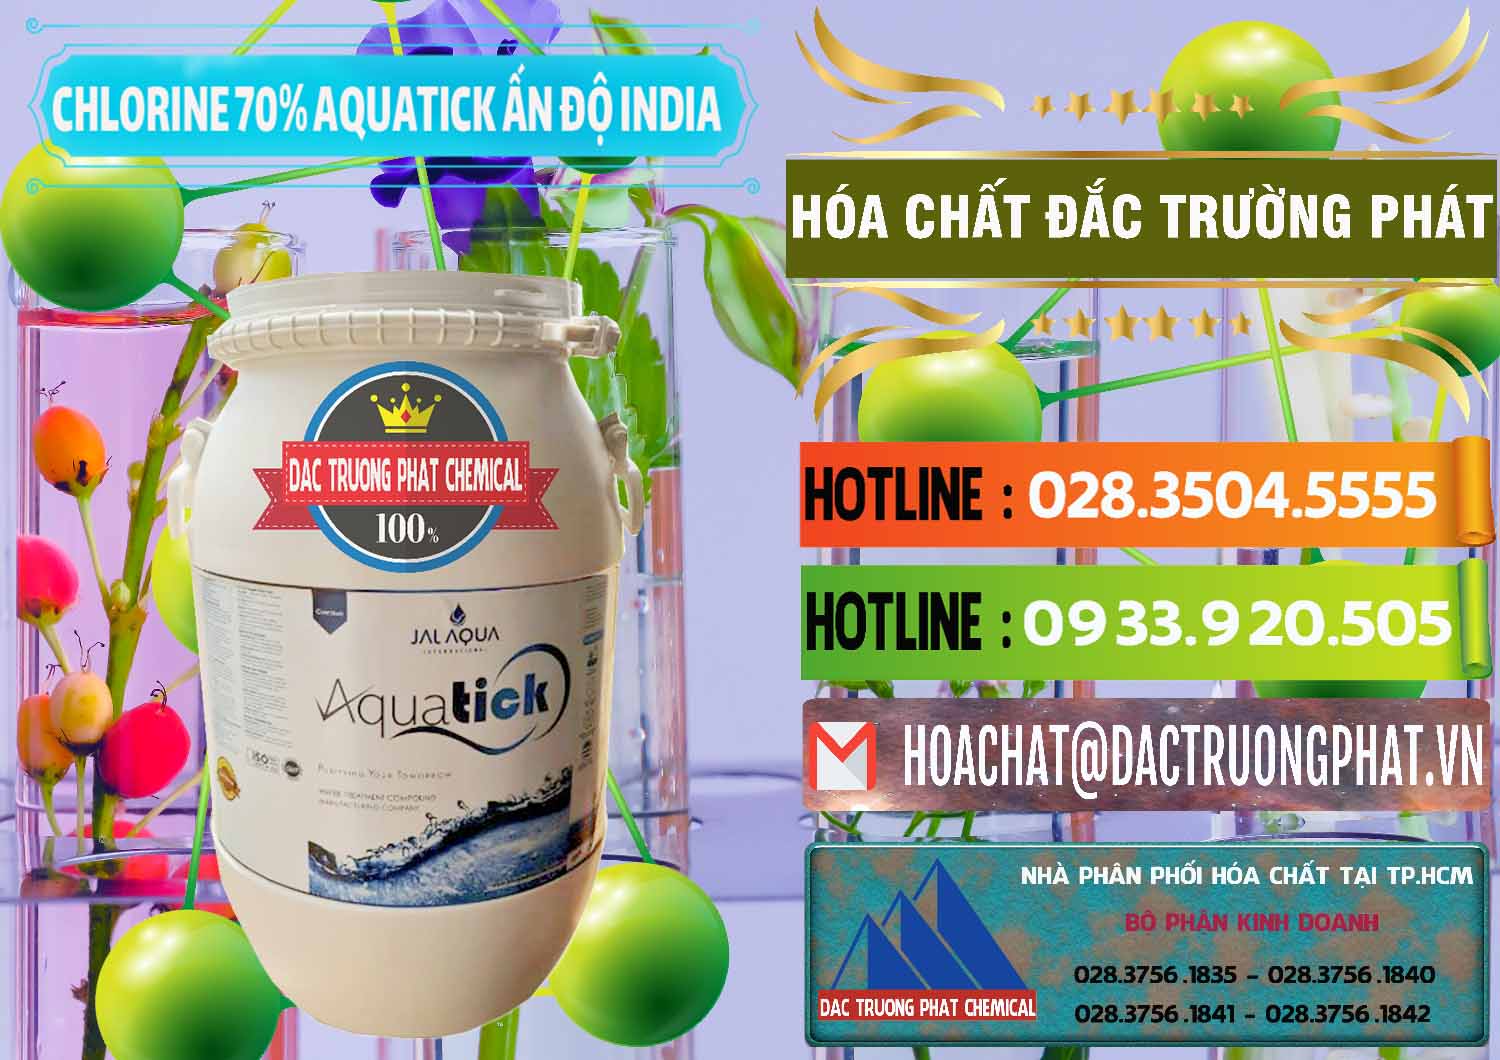 Nơi bán và cung ứng Chlorine – Clorin 70% Aquatick Jal Aqua Ấn Độ India - 0215 - Đơn vị kinh doanh và cung cấp hóa chất tại TP.HCM - cungcaphoachat.com.vn